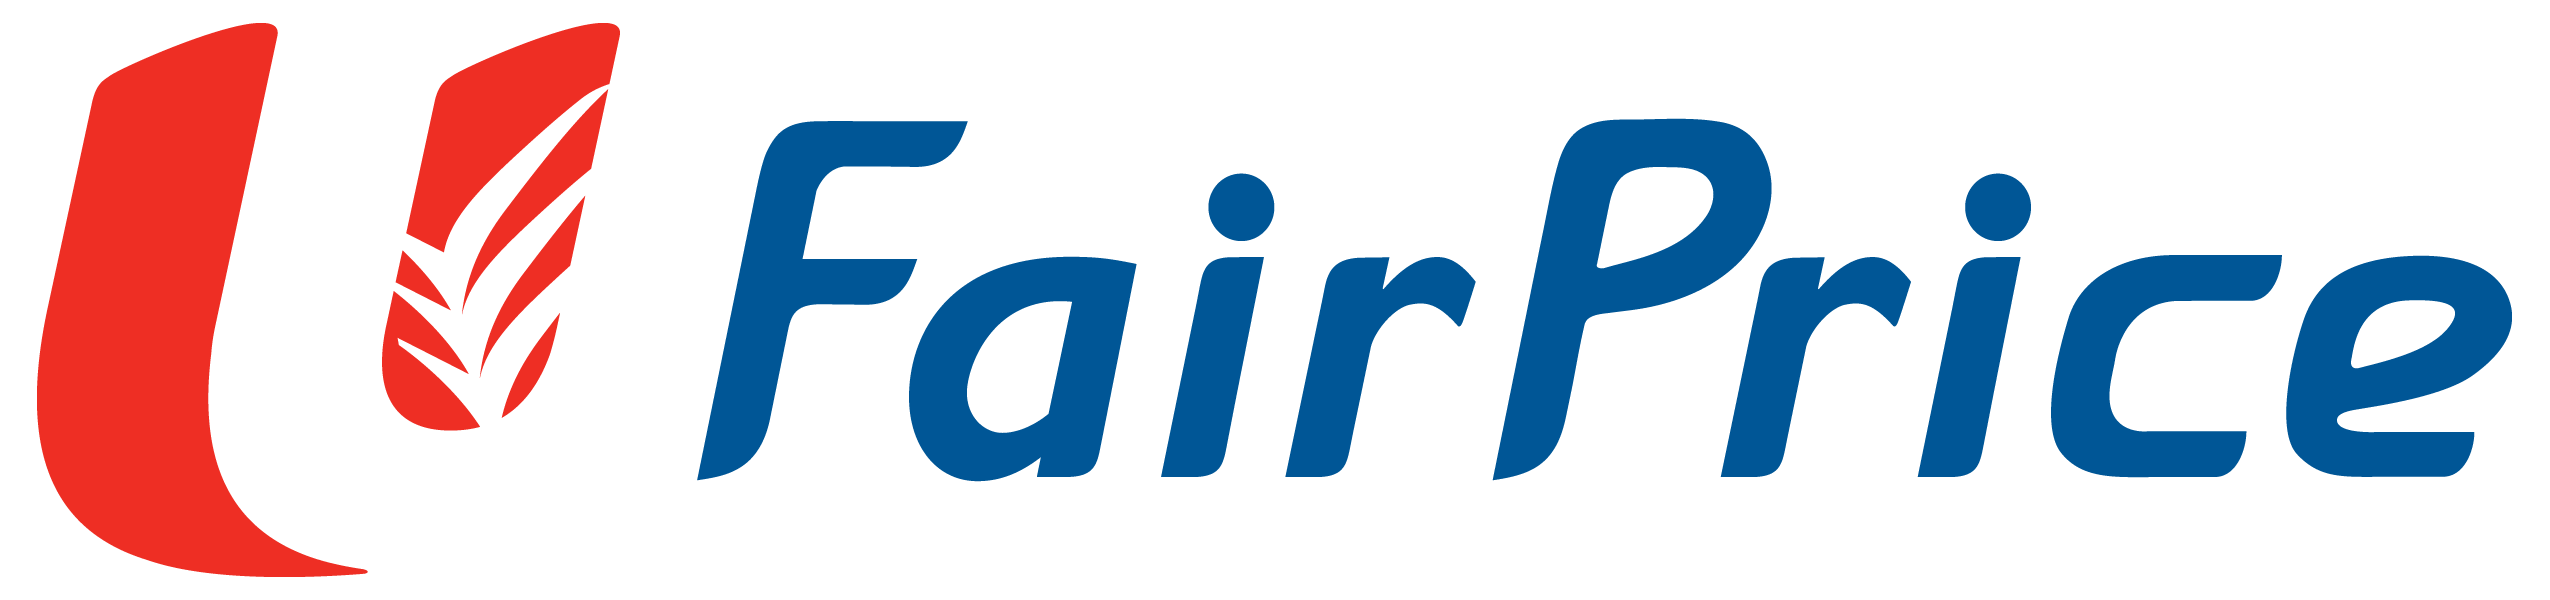 FairPrice - Fairprice Logo PN